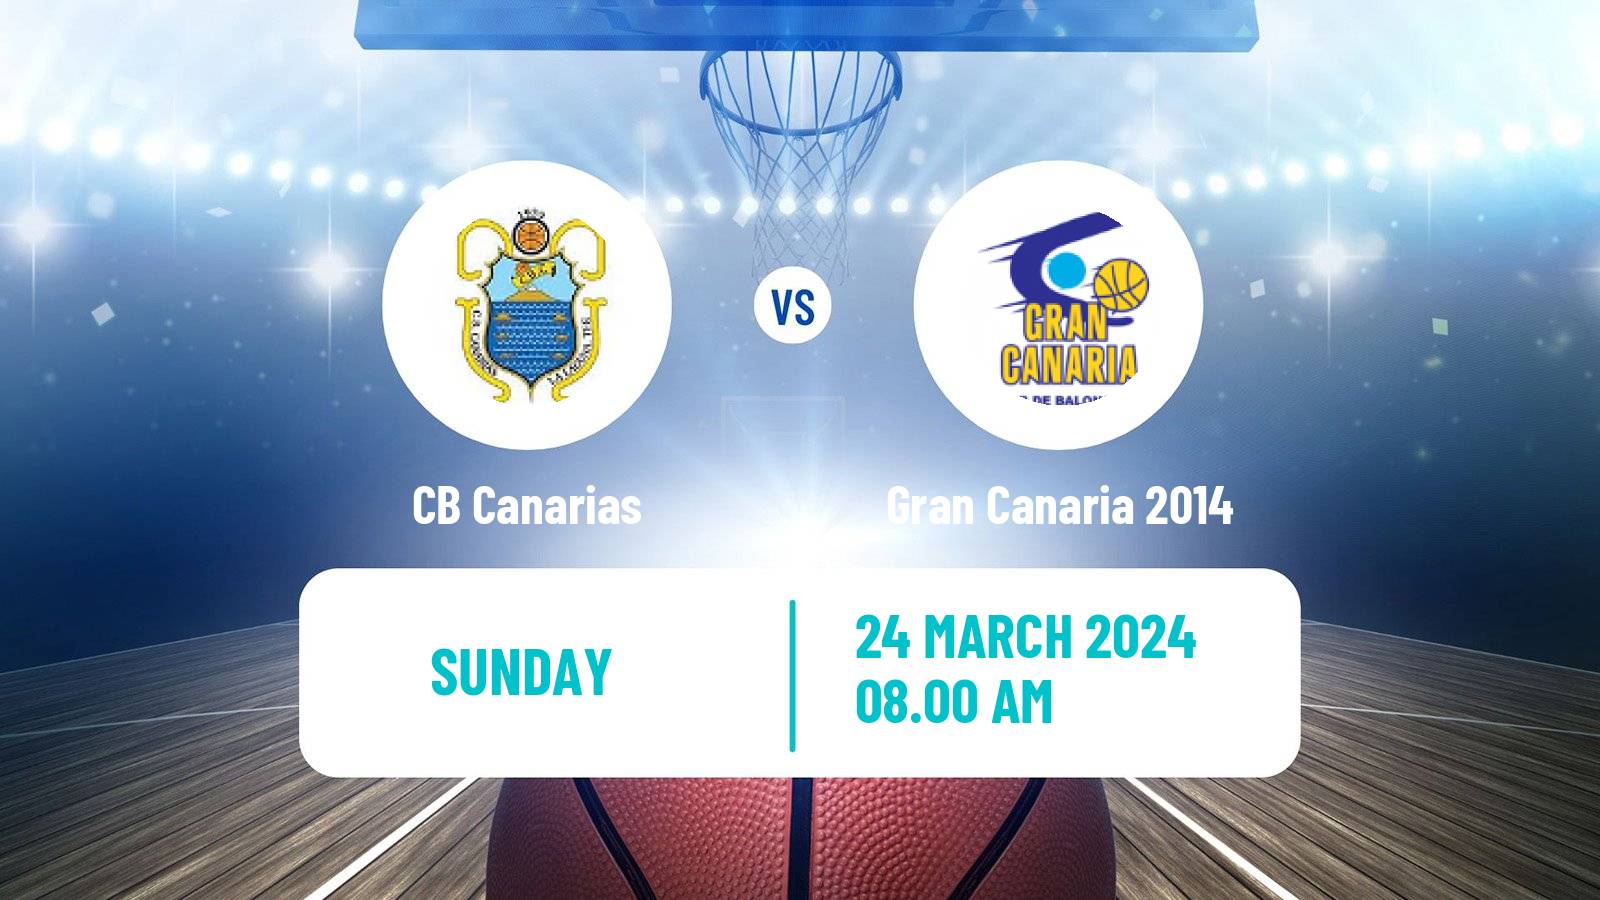 Basketball Spanish ACB League Canarias - Gran Canaria 2014